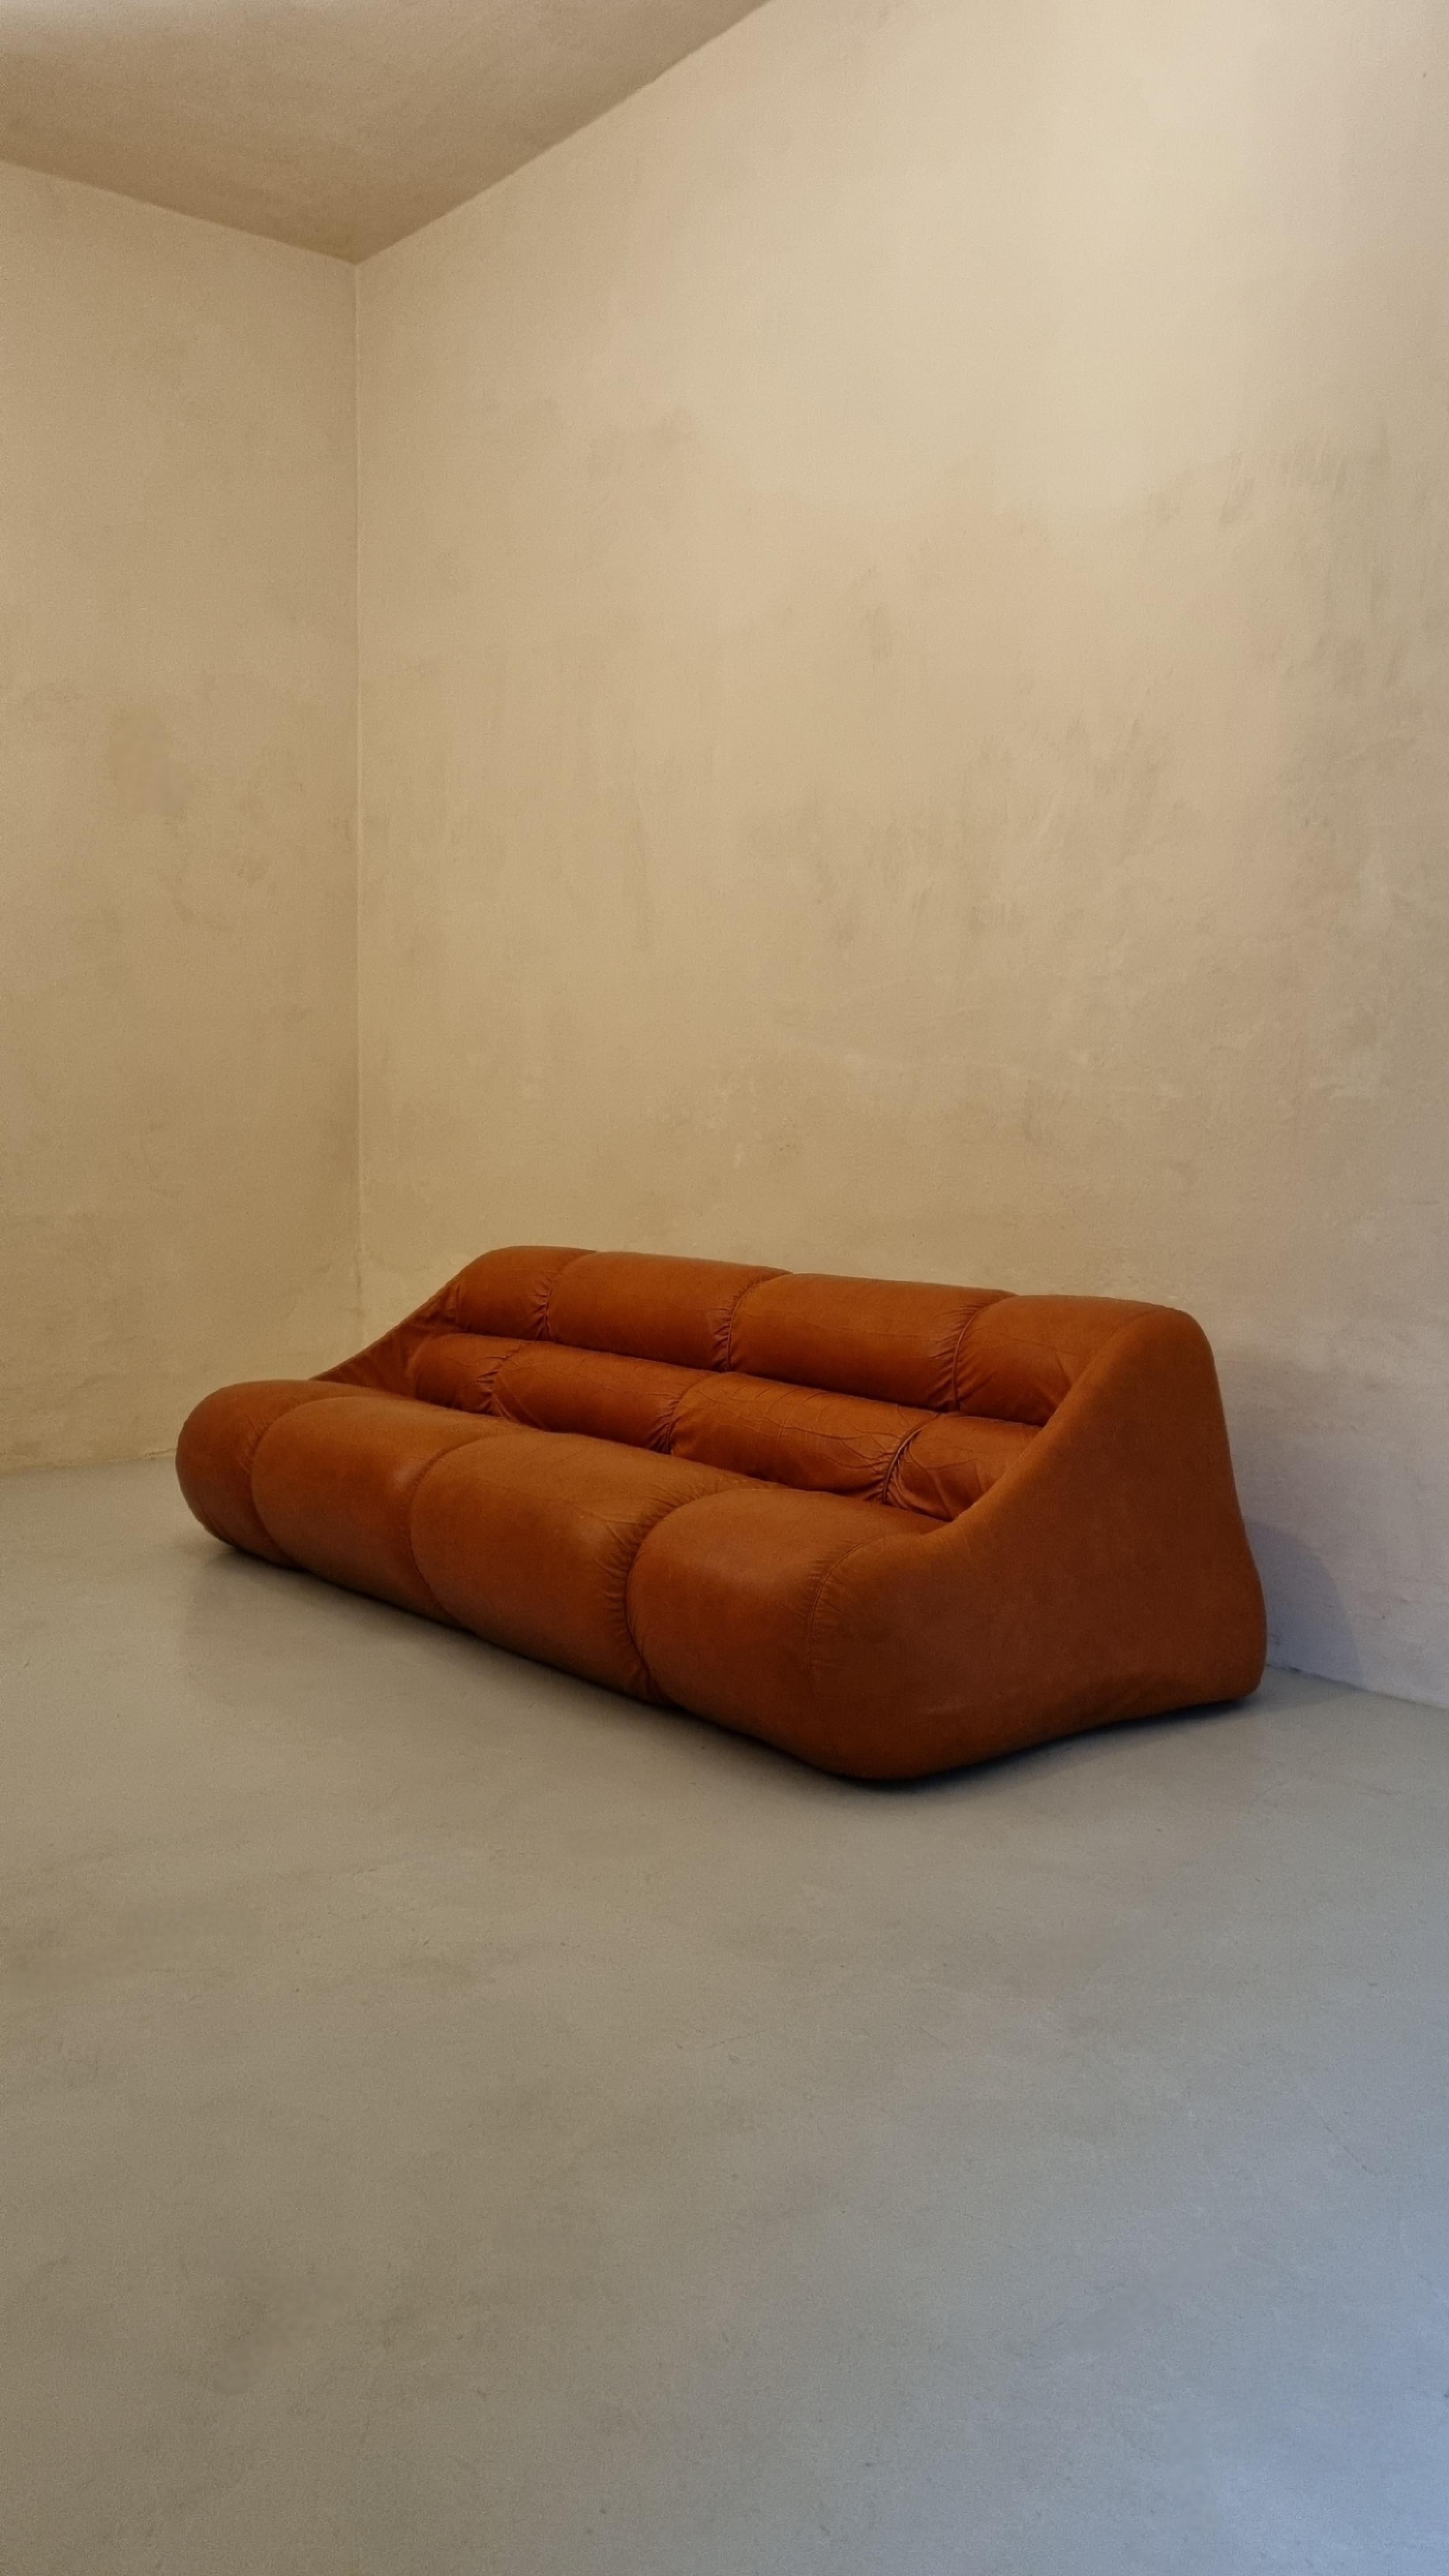 Ciuingam 3-Sitzer-Sofa, entworfen von dem Designer-Trio De Pas D' Urbino & Lomazzi für BBB Bonacina im Jahr 1967.
Schaumgummipolsterung, Originalleder, Kunststoff.
Guter Zustand, die Haut ist im Sitzen leicht abgenutzt.
Jonathan De Pas (Mailand 1932